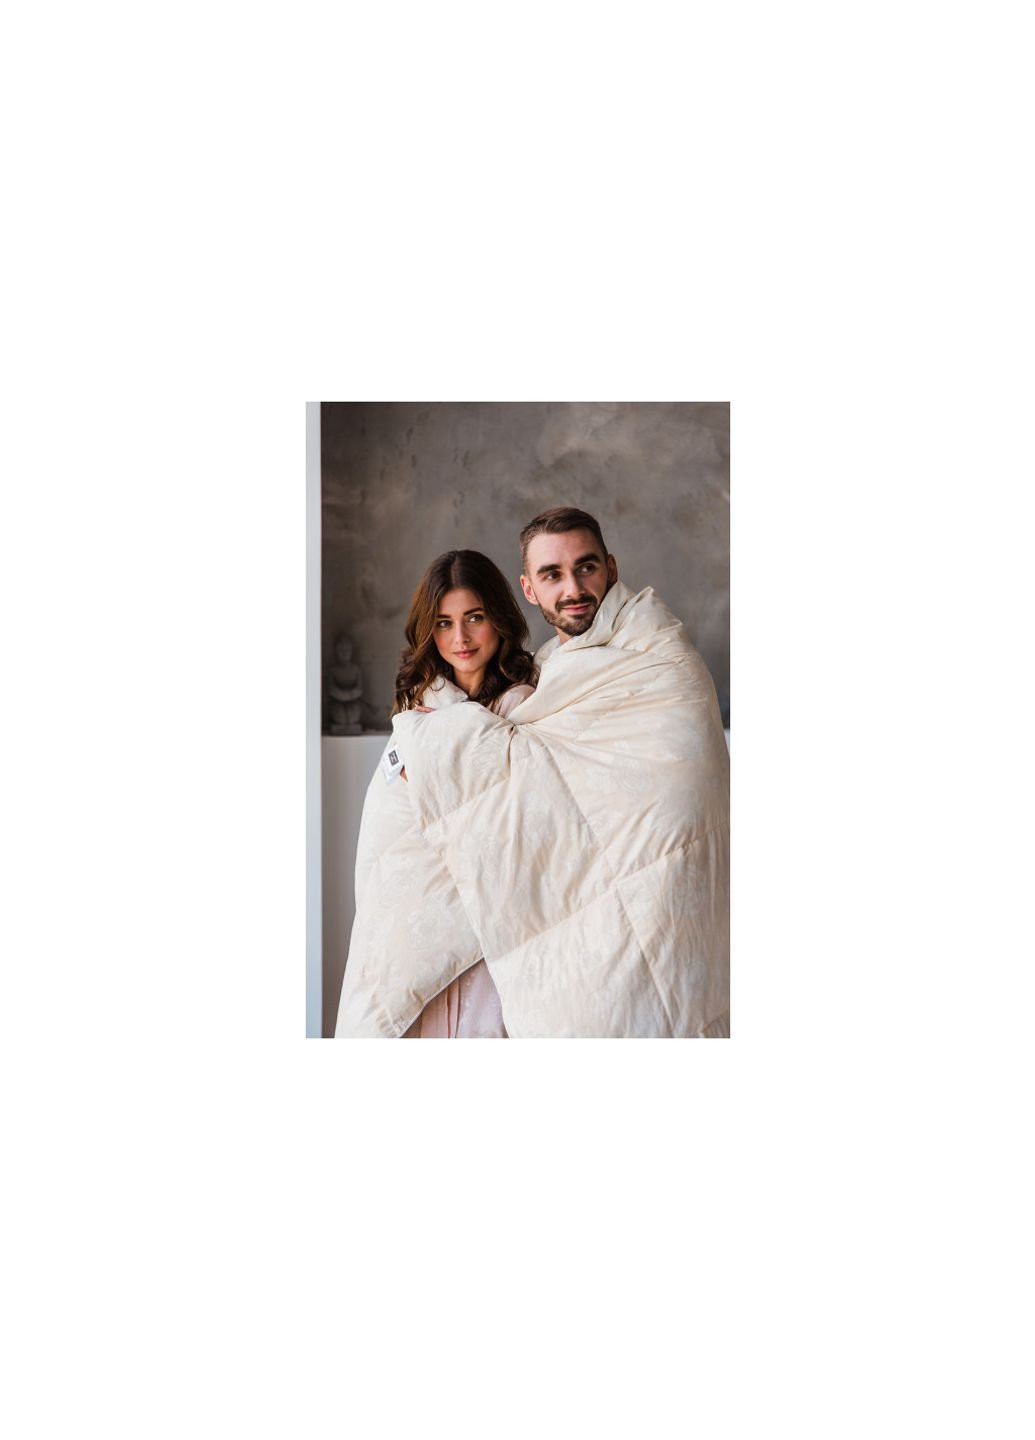 Одеяло пуховое Extra 039 стандарт 110x140 см (2200000001115) Mirson (254079270)